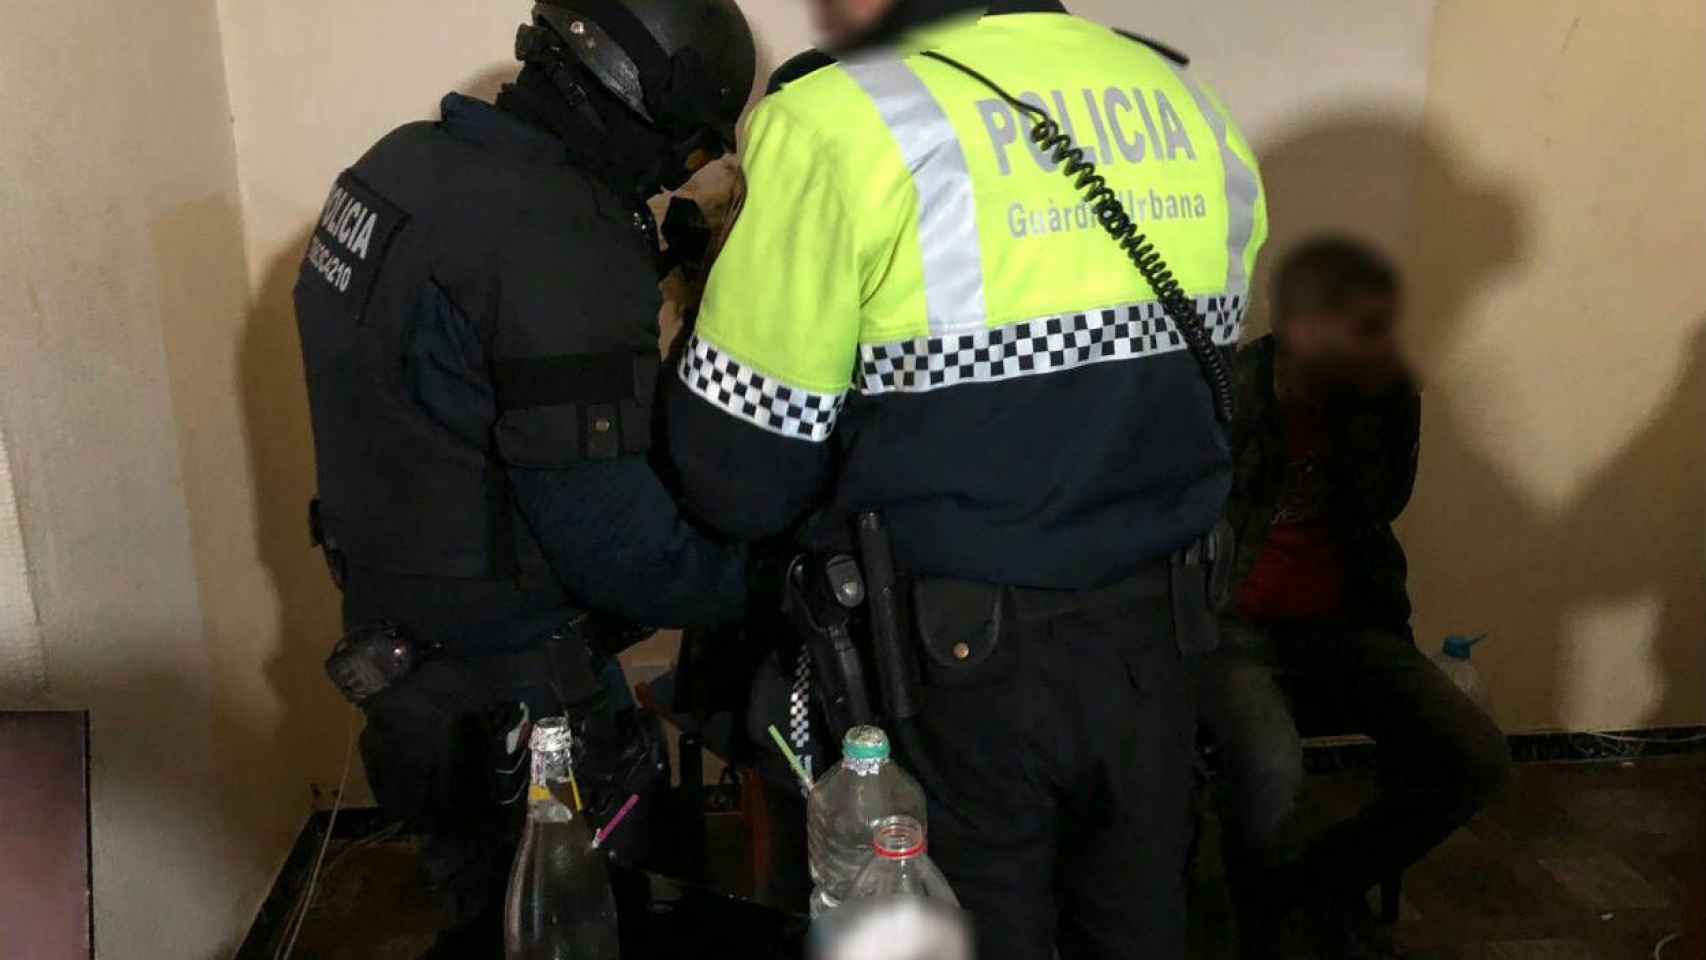 Momento de la detención de varios presuntos traficantes / @Barcelona_GUB